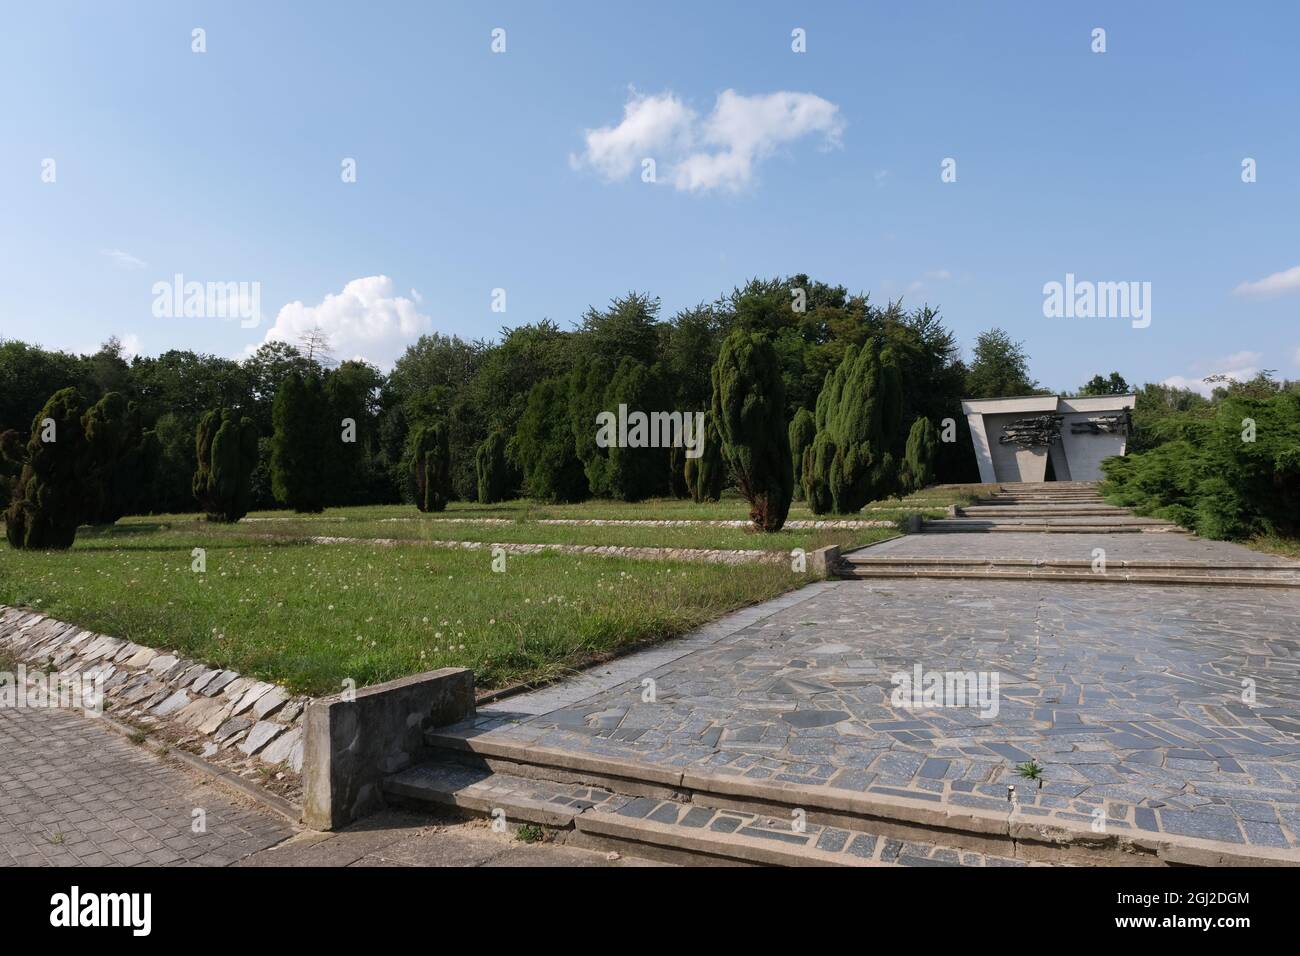 Lambinowice, Pologne - 21 août 2021 : prisonniers soviétiques de cimetière de guerre et mémorial. Environ 40.000 personnes ont péri dans le camp Stalag 318 VIII F 344 Banque D'Images